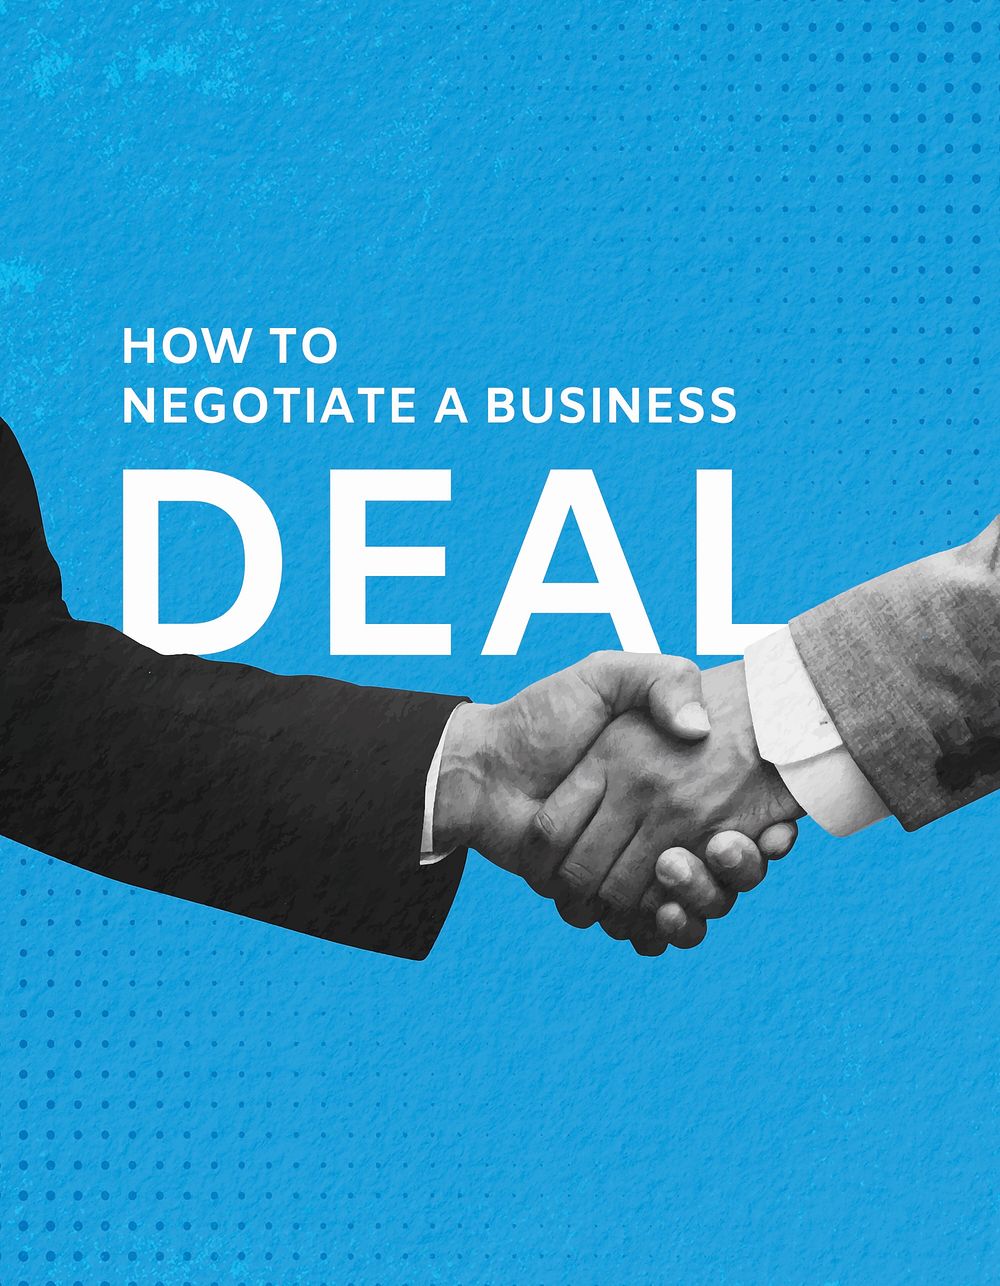 Business deal flyer template, businessmen handshake remixed media vector